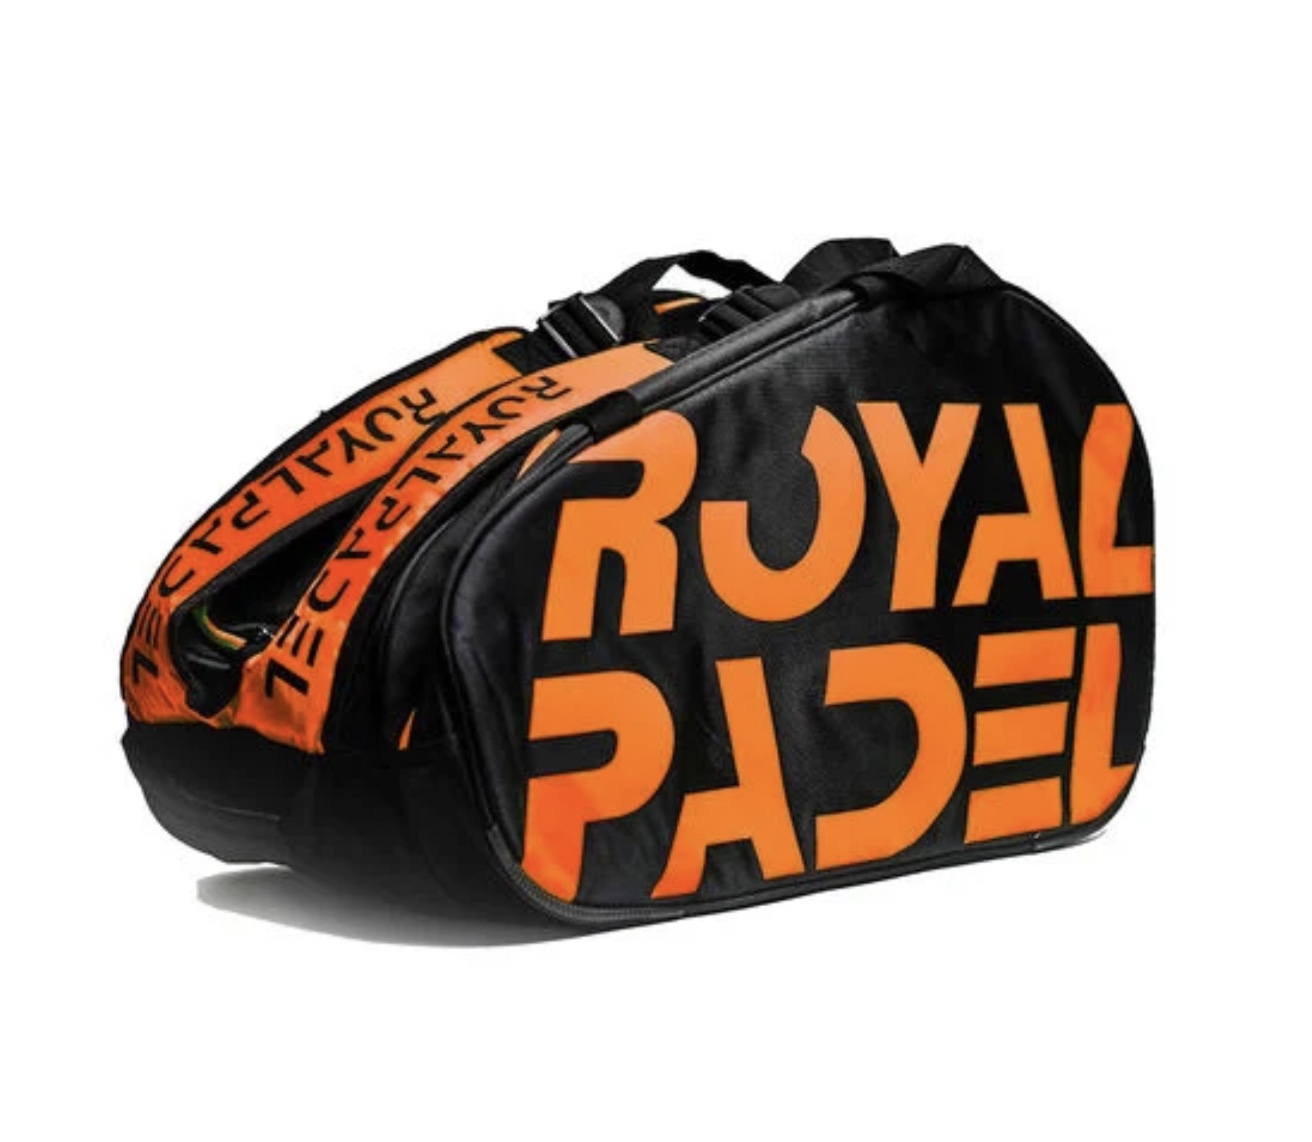 Sac Royal Padel XL Orange 